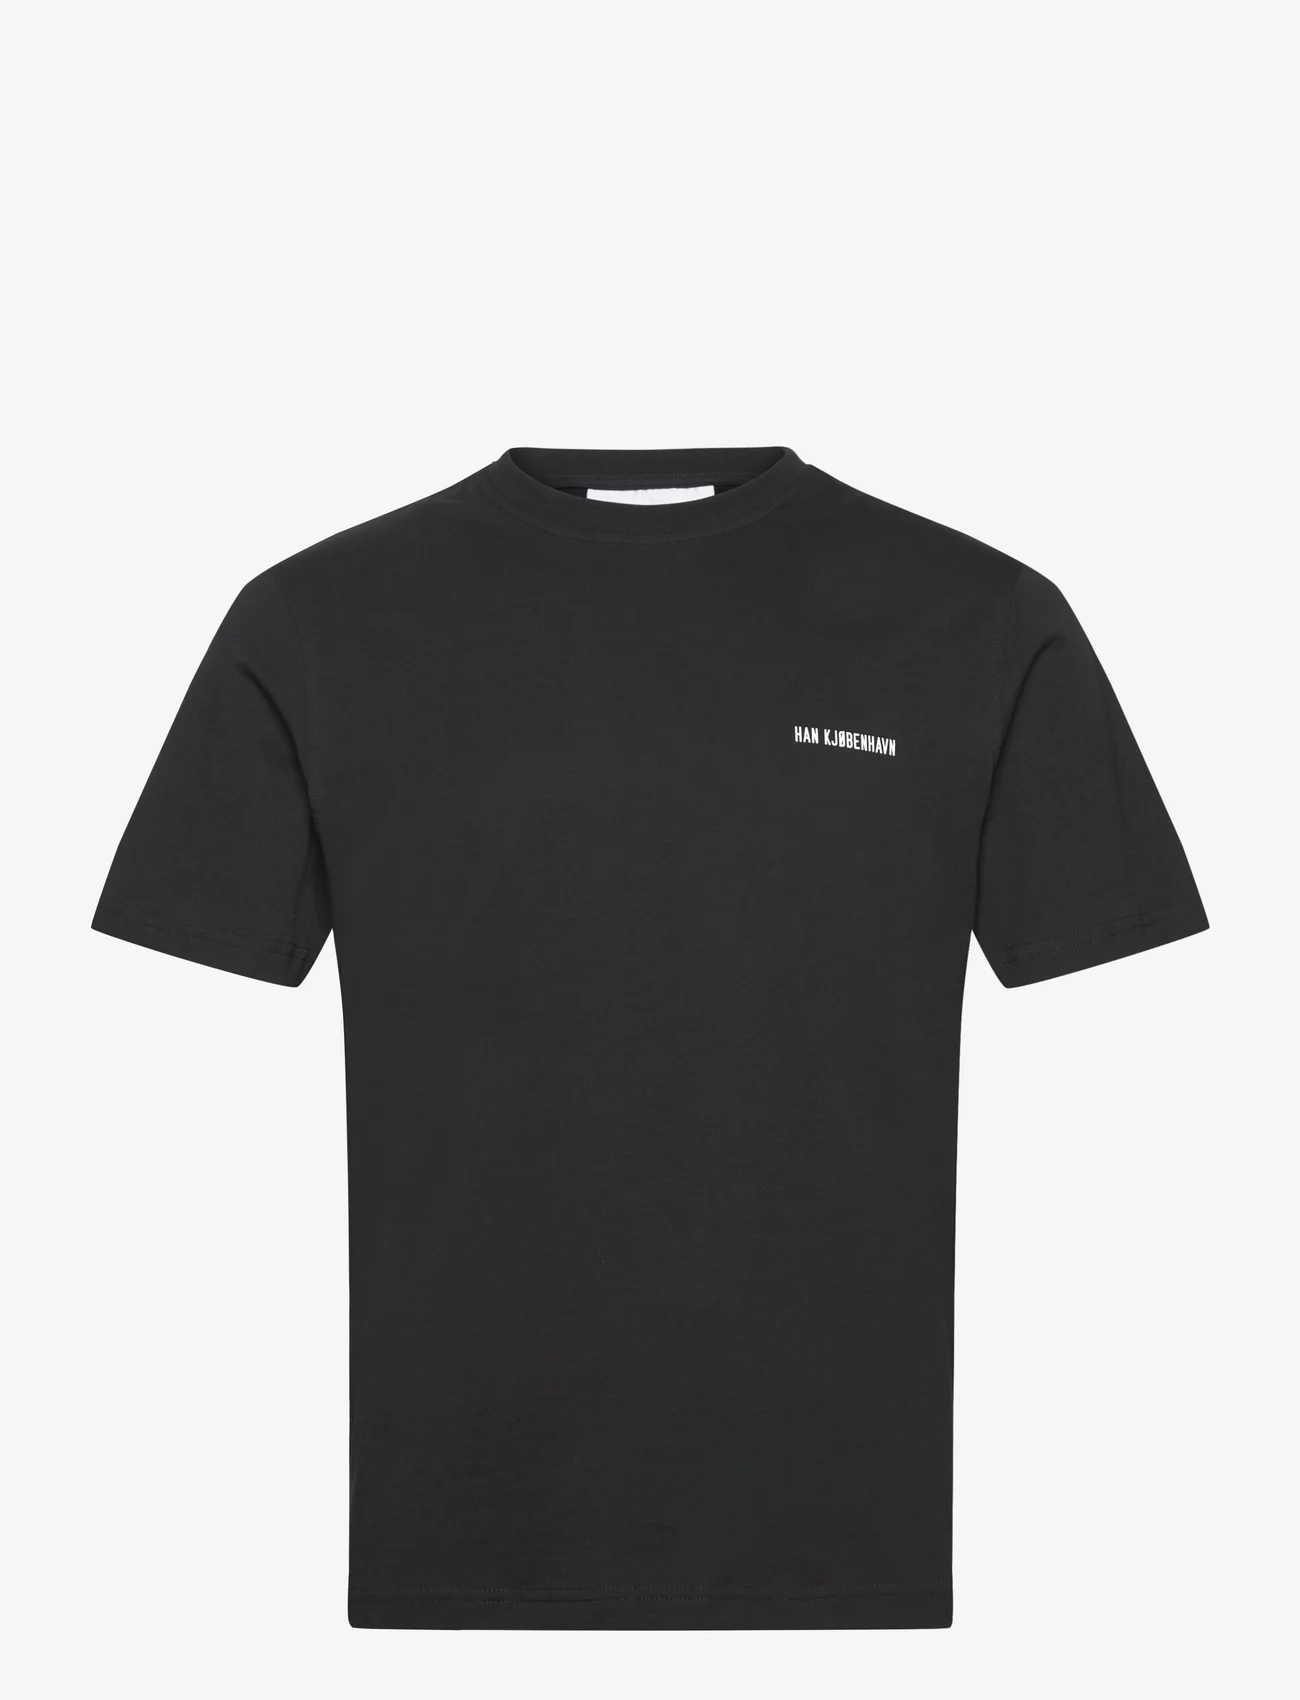 HAN Kjøbenhavn - Regular T-shirt Short sleeve - kurzärmelige - black - 0